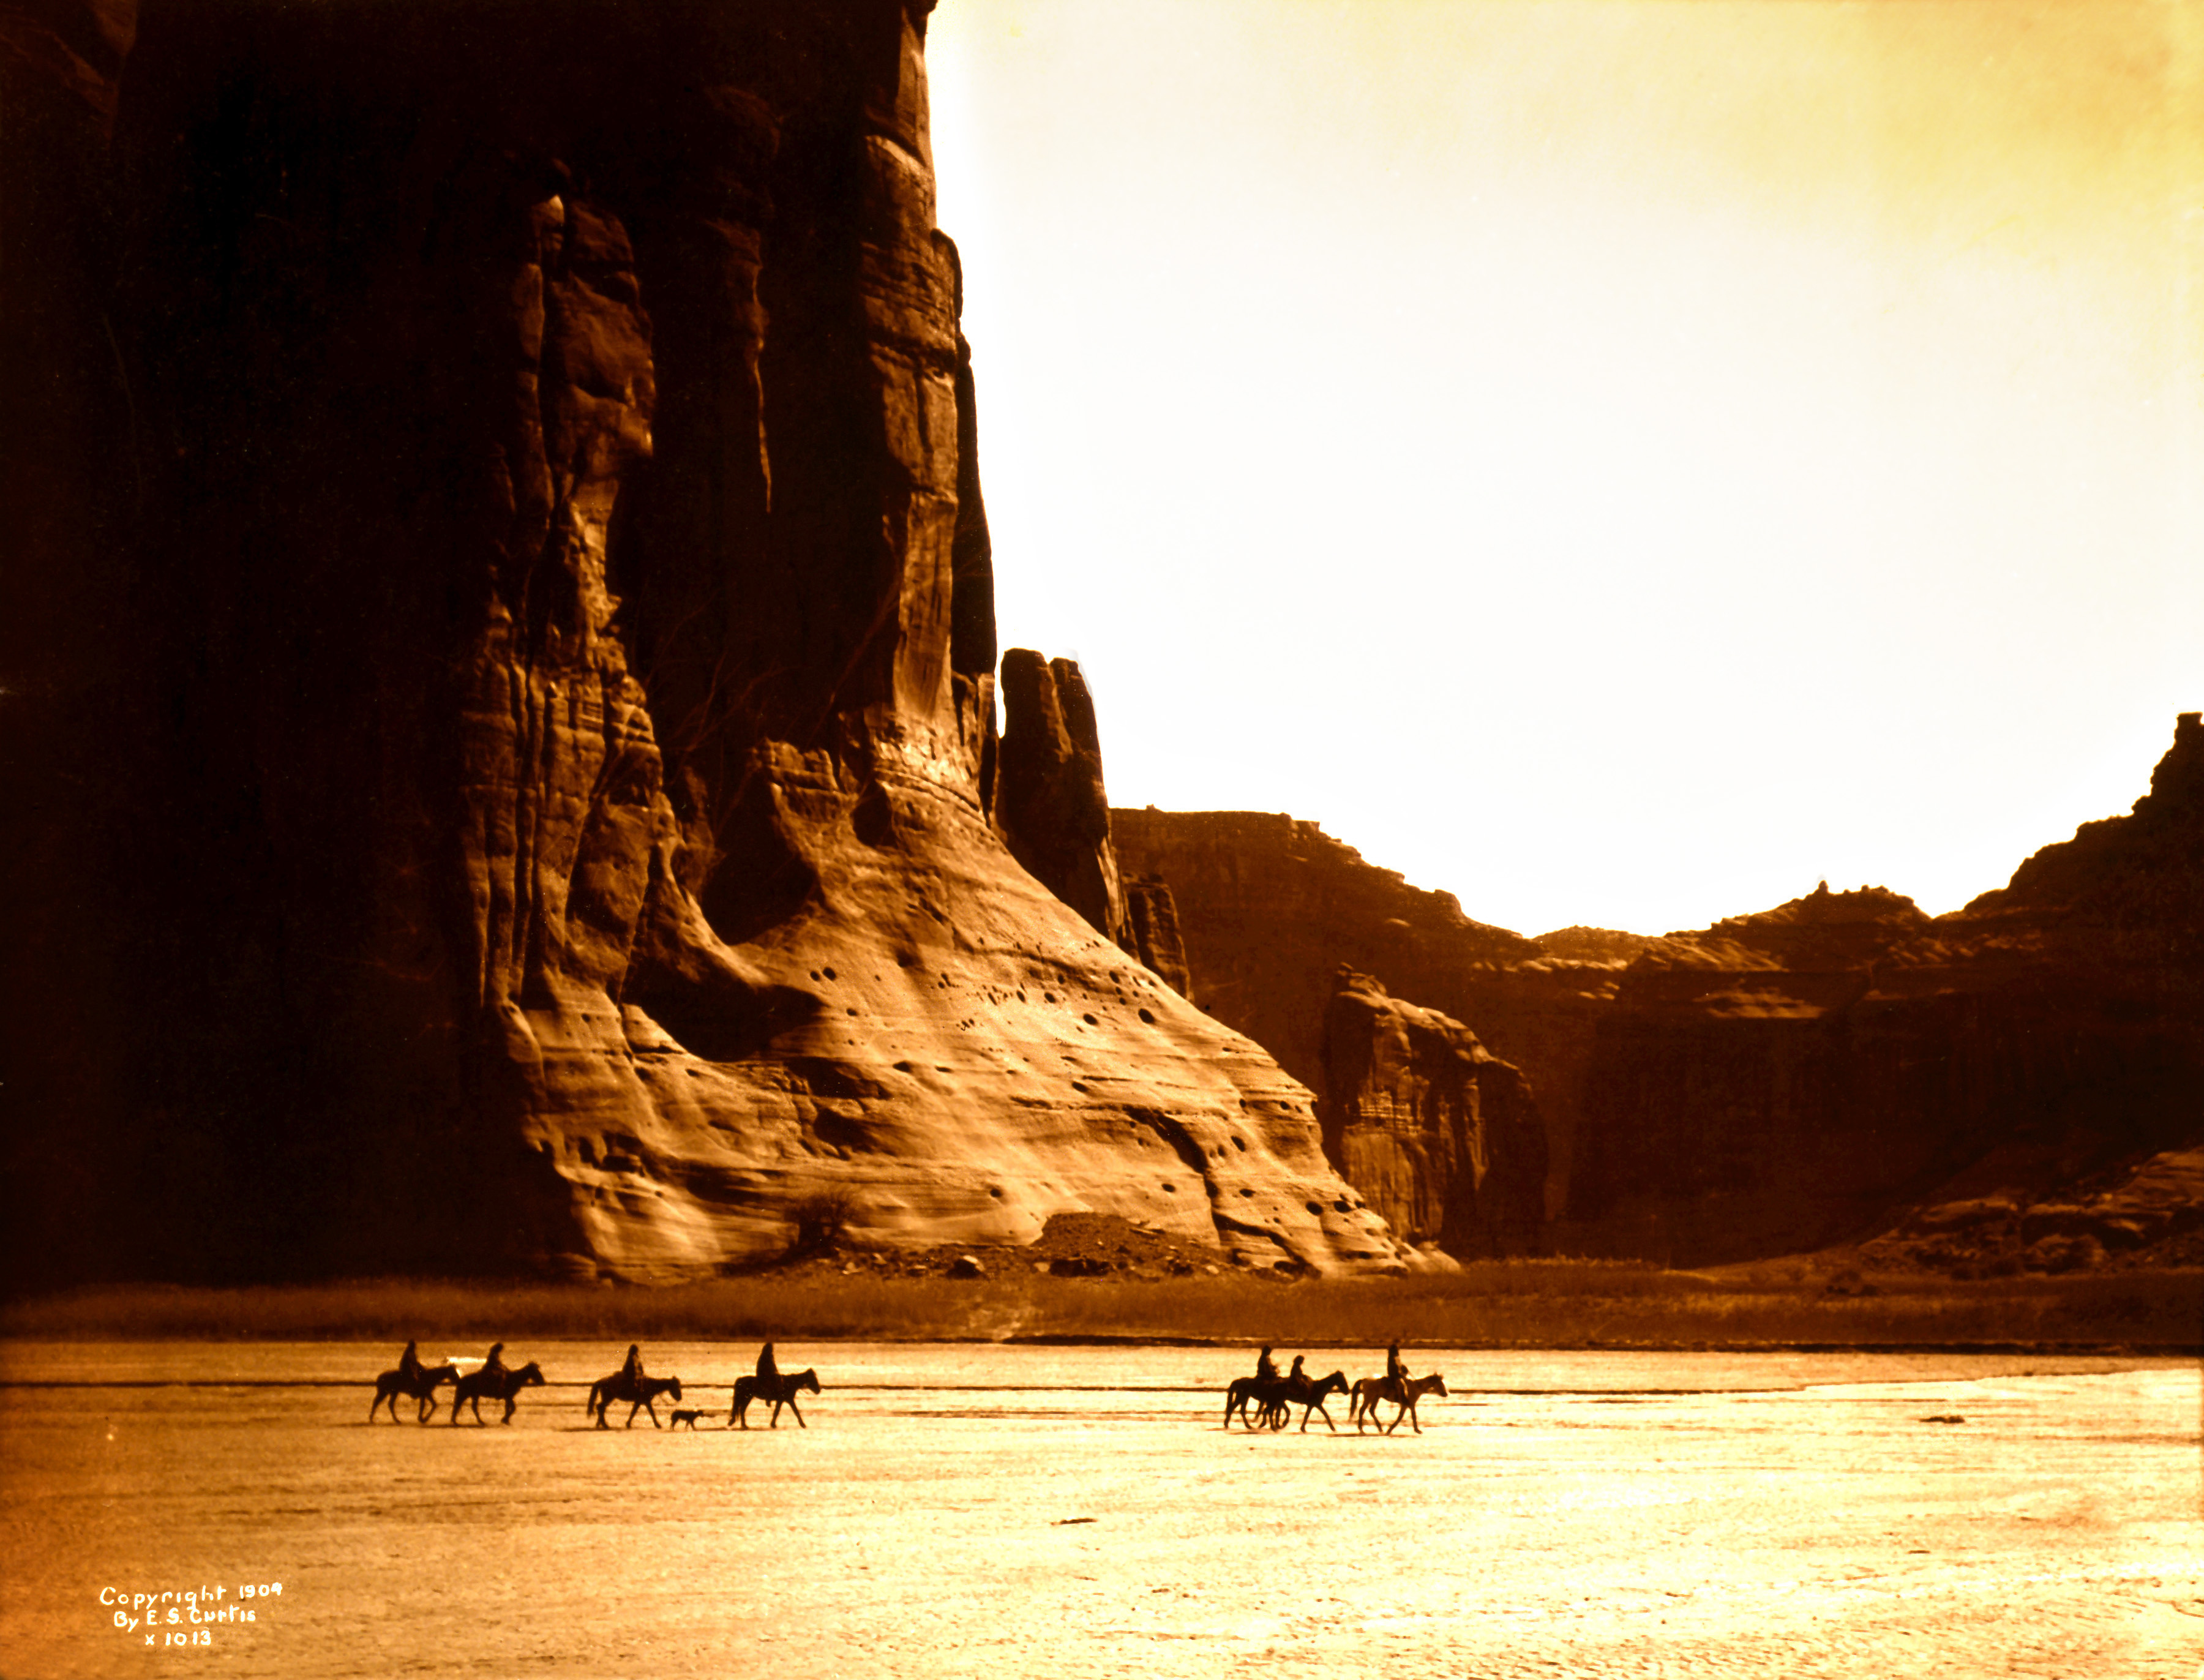 Edward S. Curtis, Canyon de Chelly, Navajo, 1904